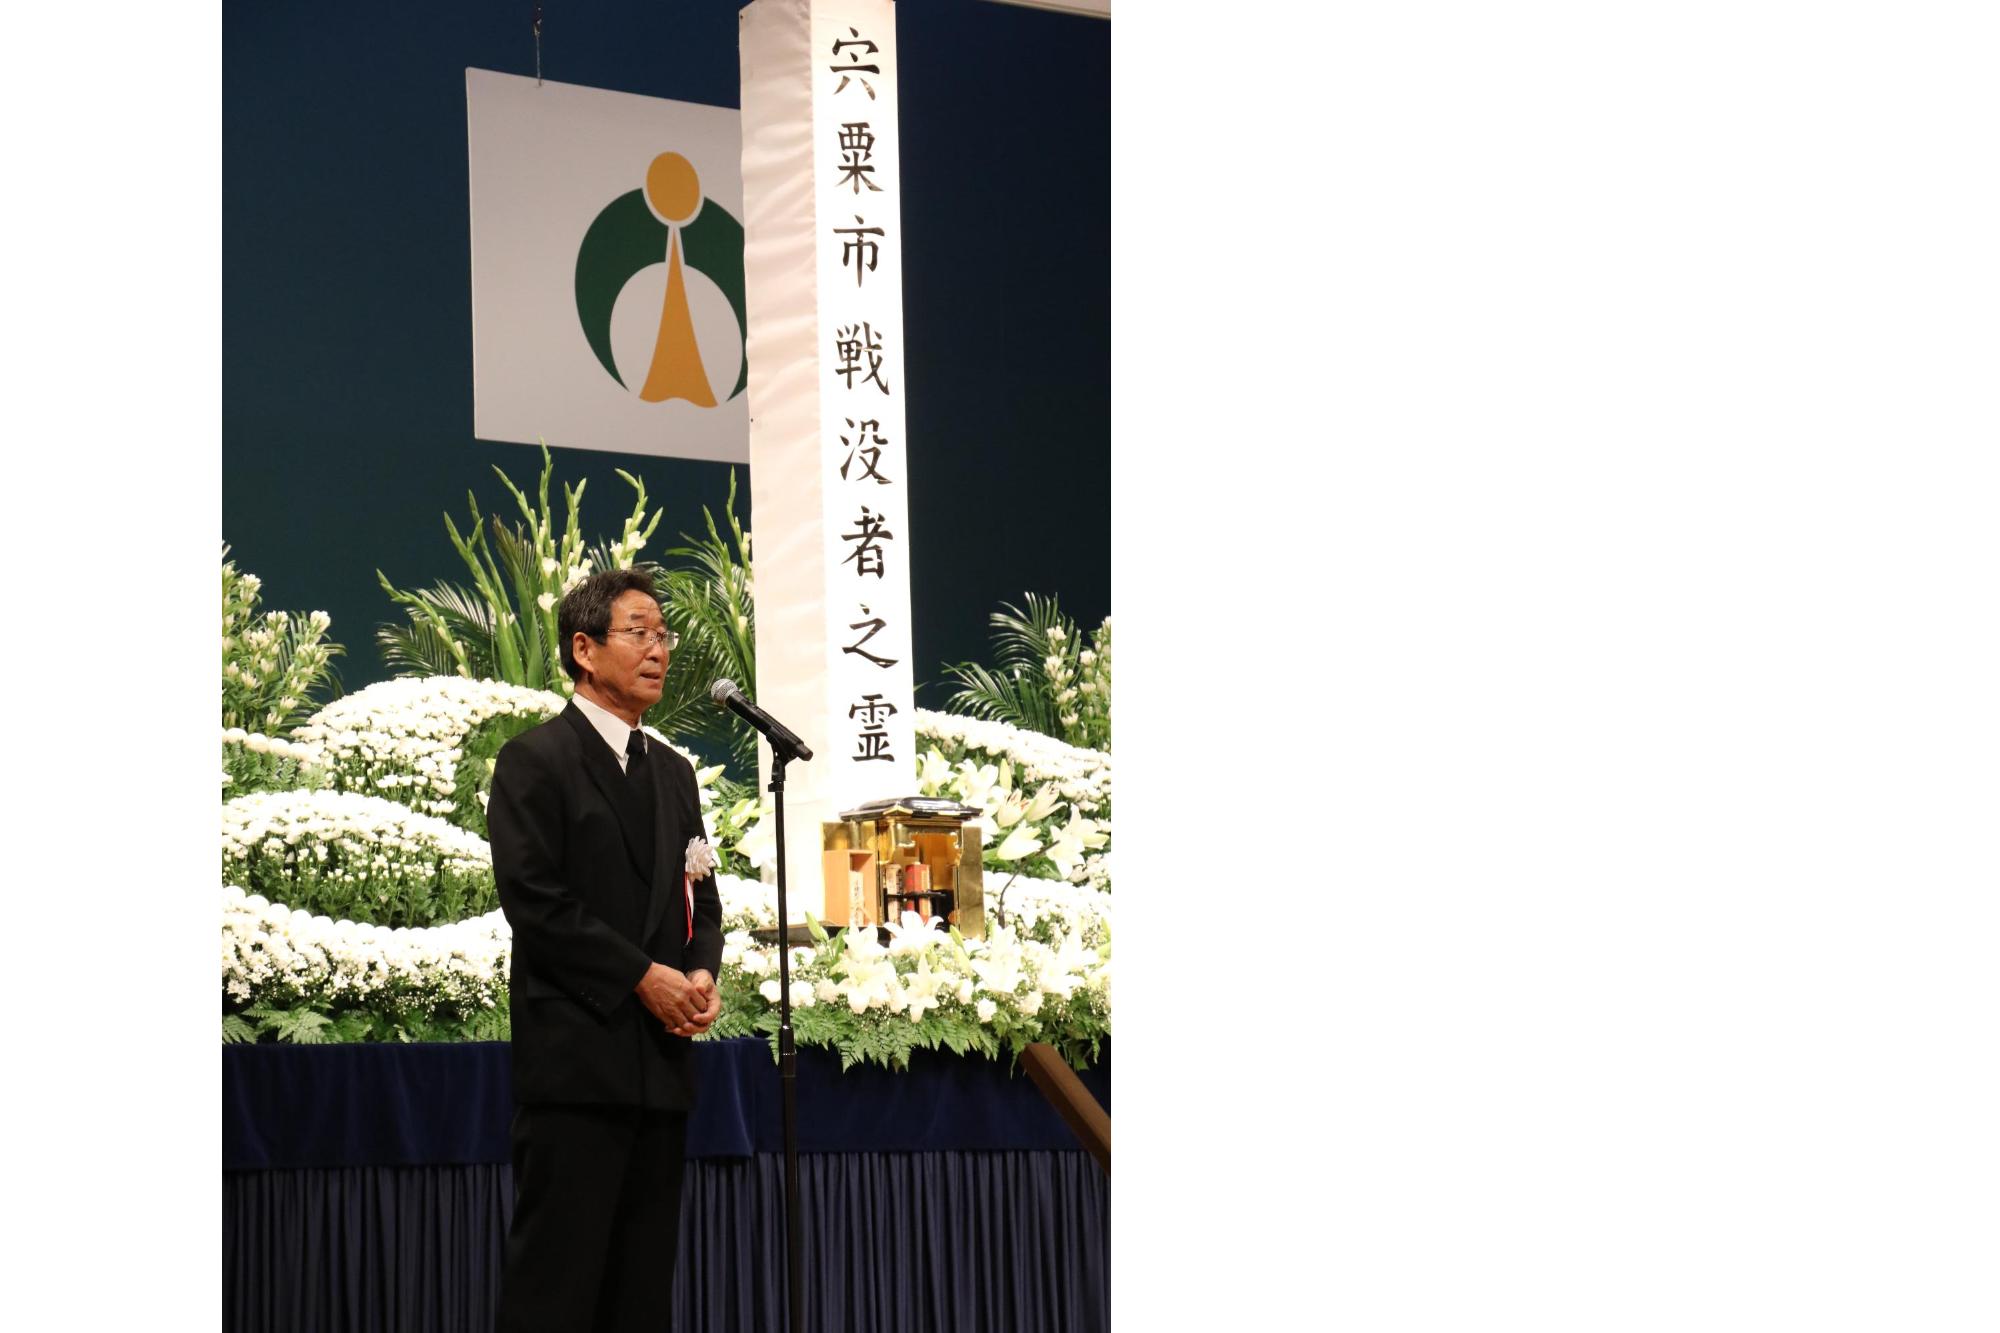 戦没者追悼式にて式辞を述べる福元市長の写真